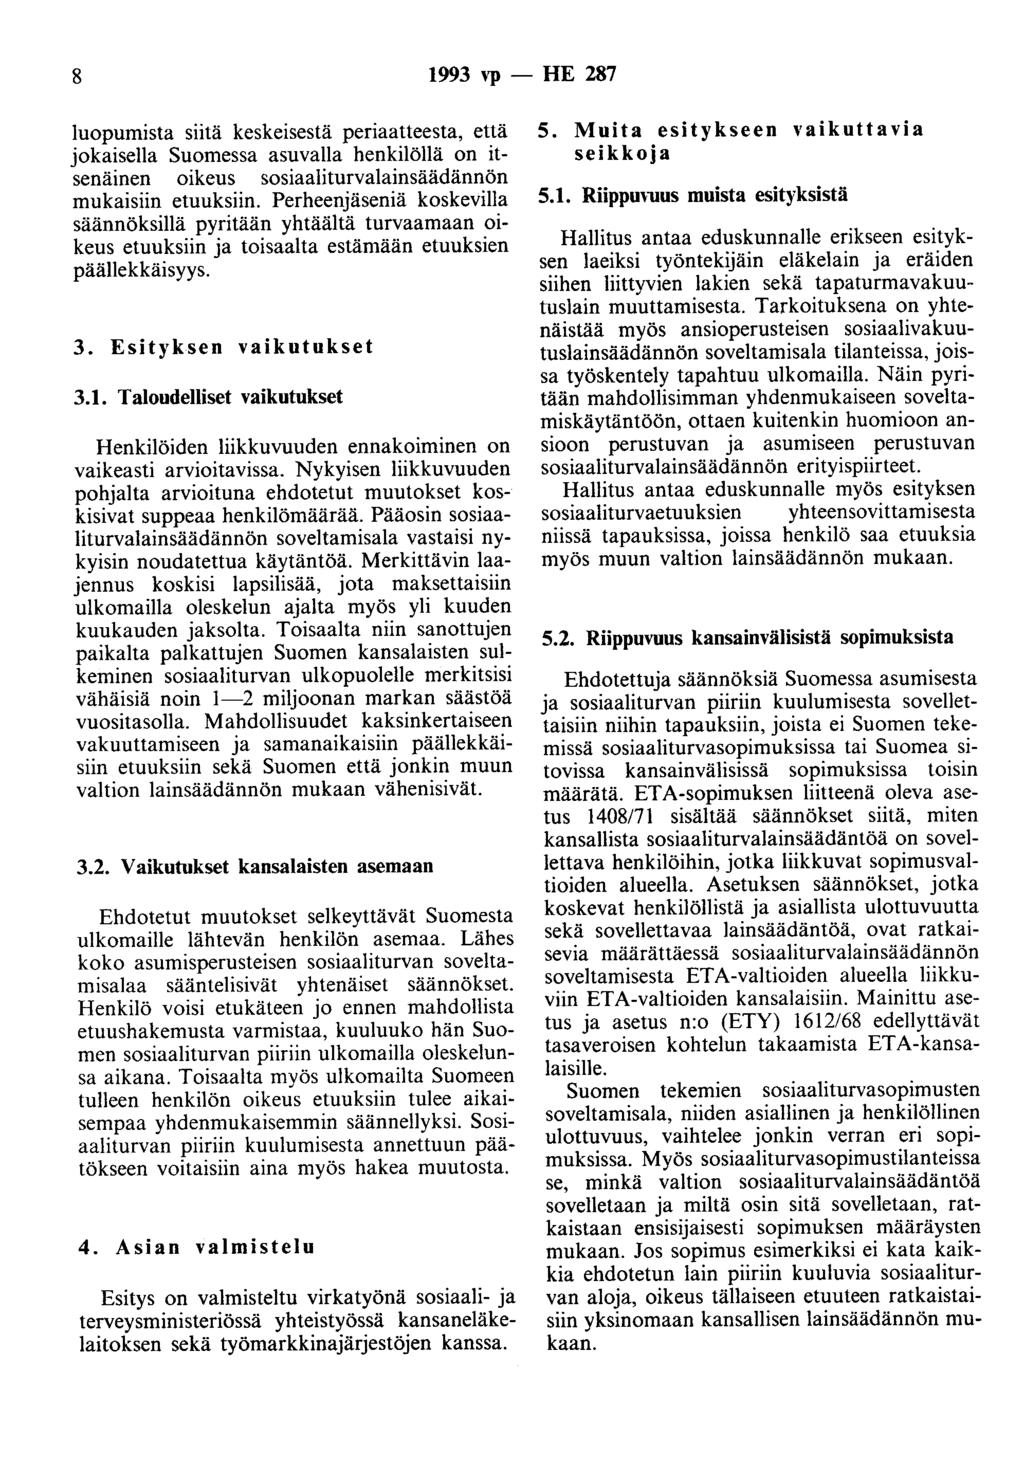 8 1993 vp - HE 287 luopumista siitä keskeisestä periaatteesta, että jokaisella Suomessa asuvalla henkilöllä on itsenäinen oikeus sosiaaliturvalainsäädännön mukaisiin etuuksiin.